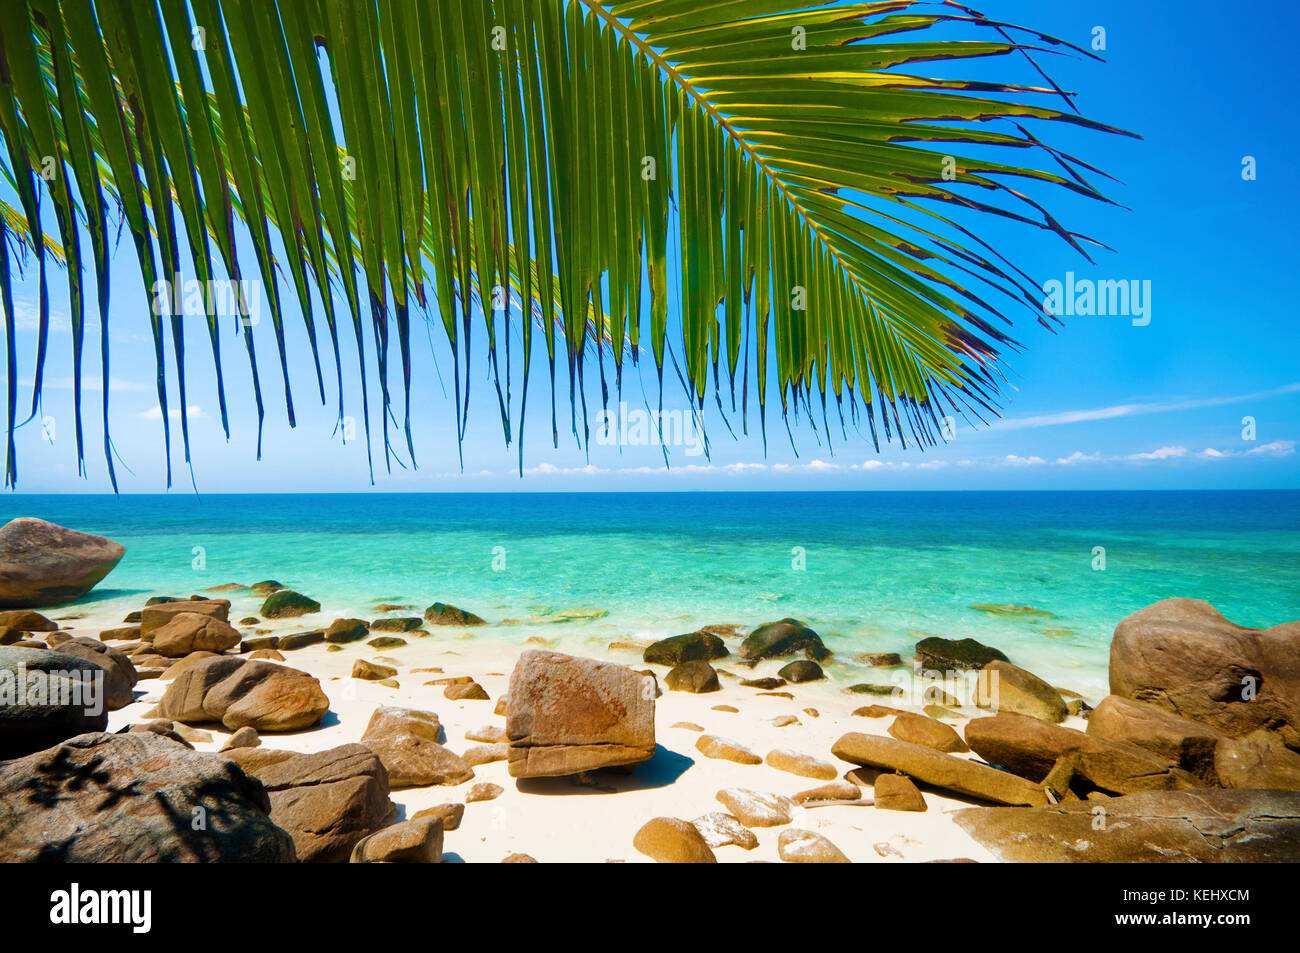 Summer beach view at Lang tengah island, Terengganu, Malaysia Stock Photo